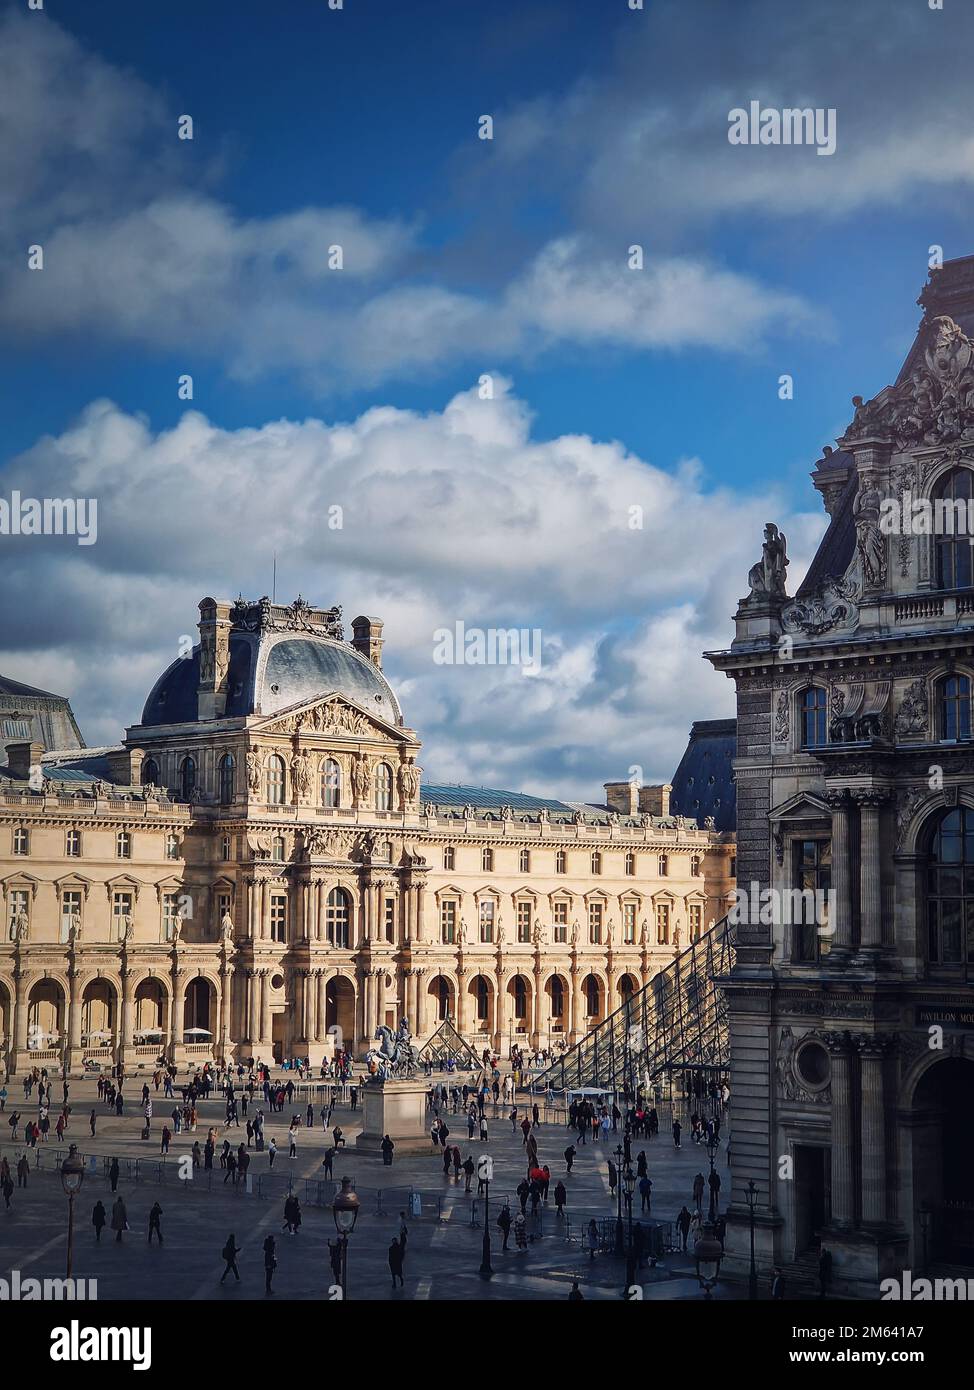 Louvre-Museumsviertel, Paris, Frankreich. Der berühmte Palast bietet einen vertikalen Hintergrund Stockfoto